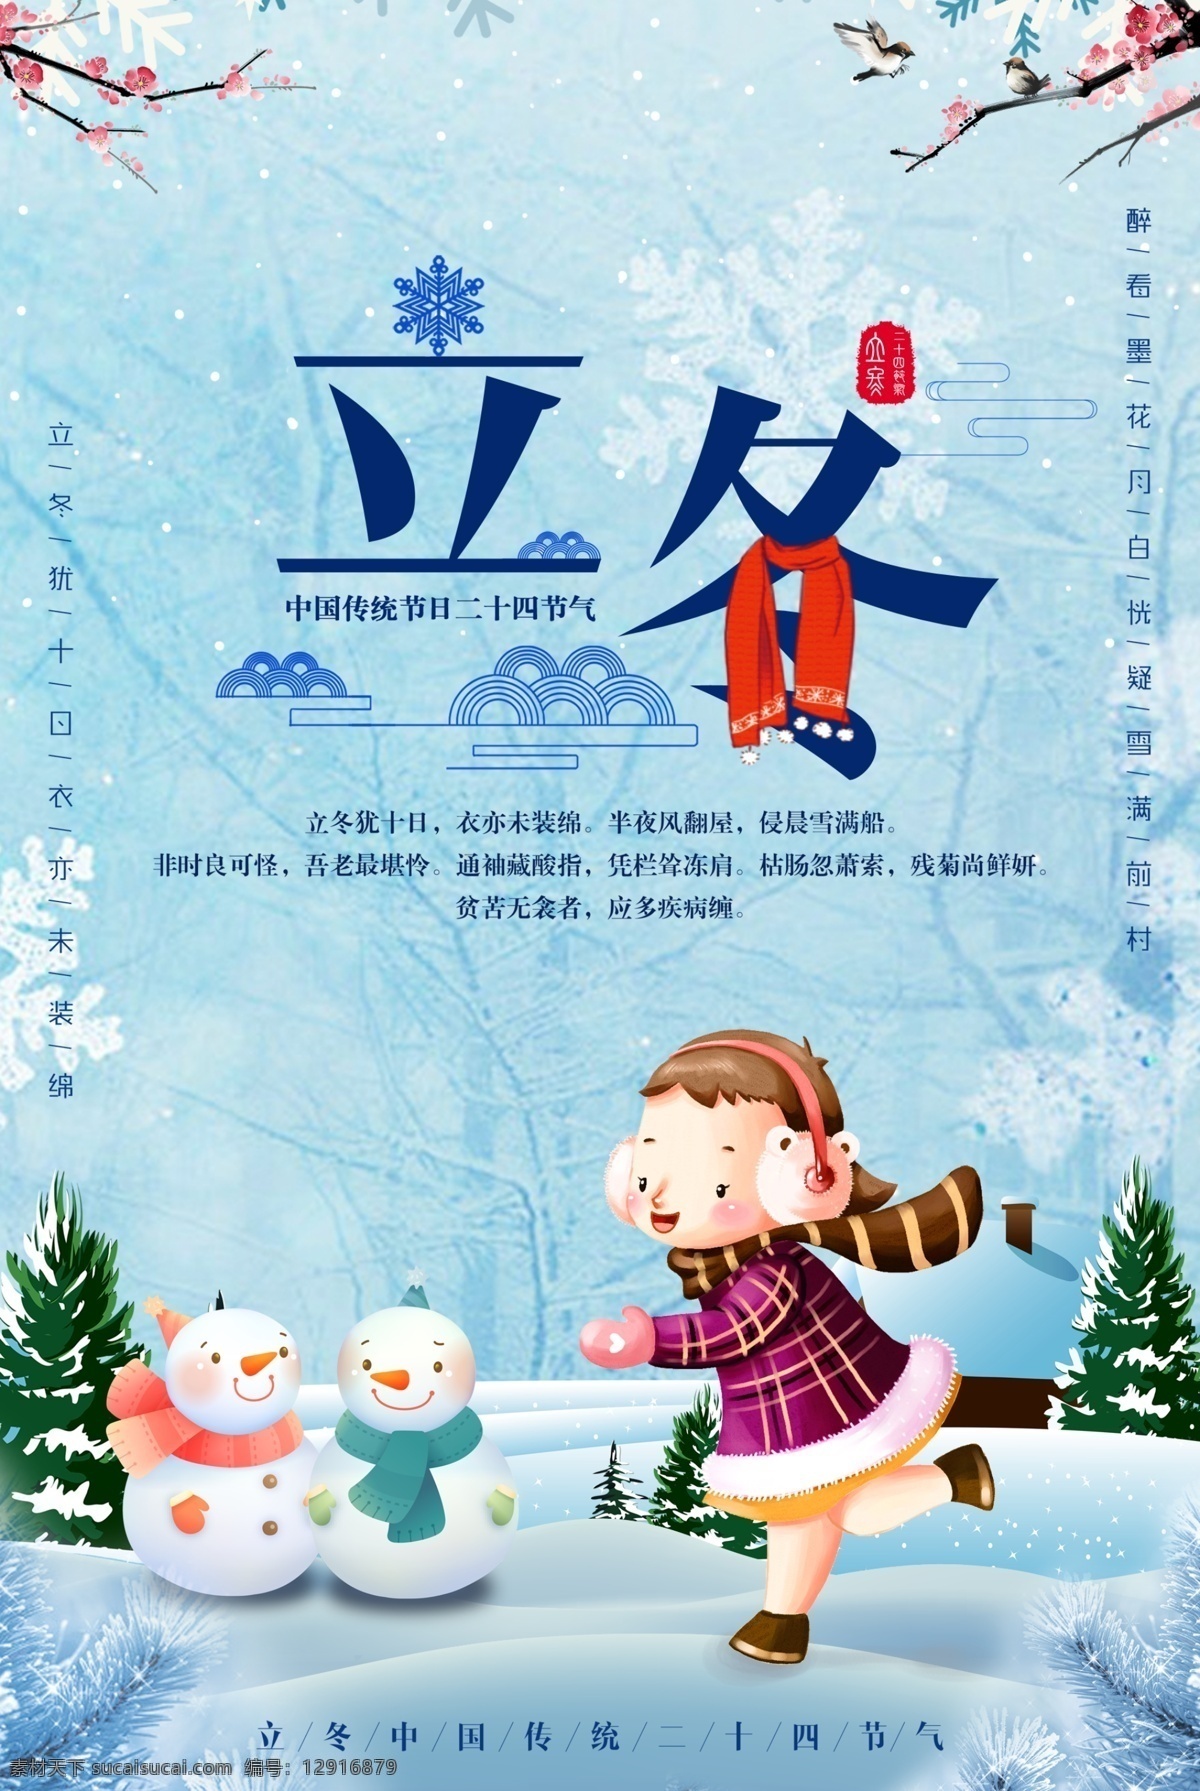 二十四节气 冬季 立冬 海报 下雪 喜鹊 展板 梅花 雪人卡通